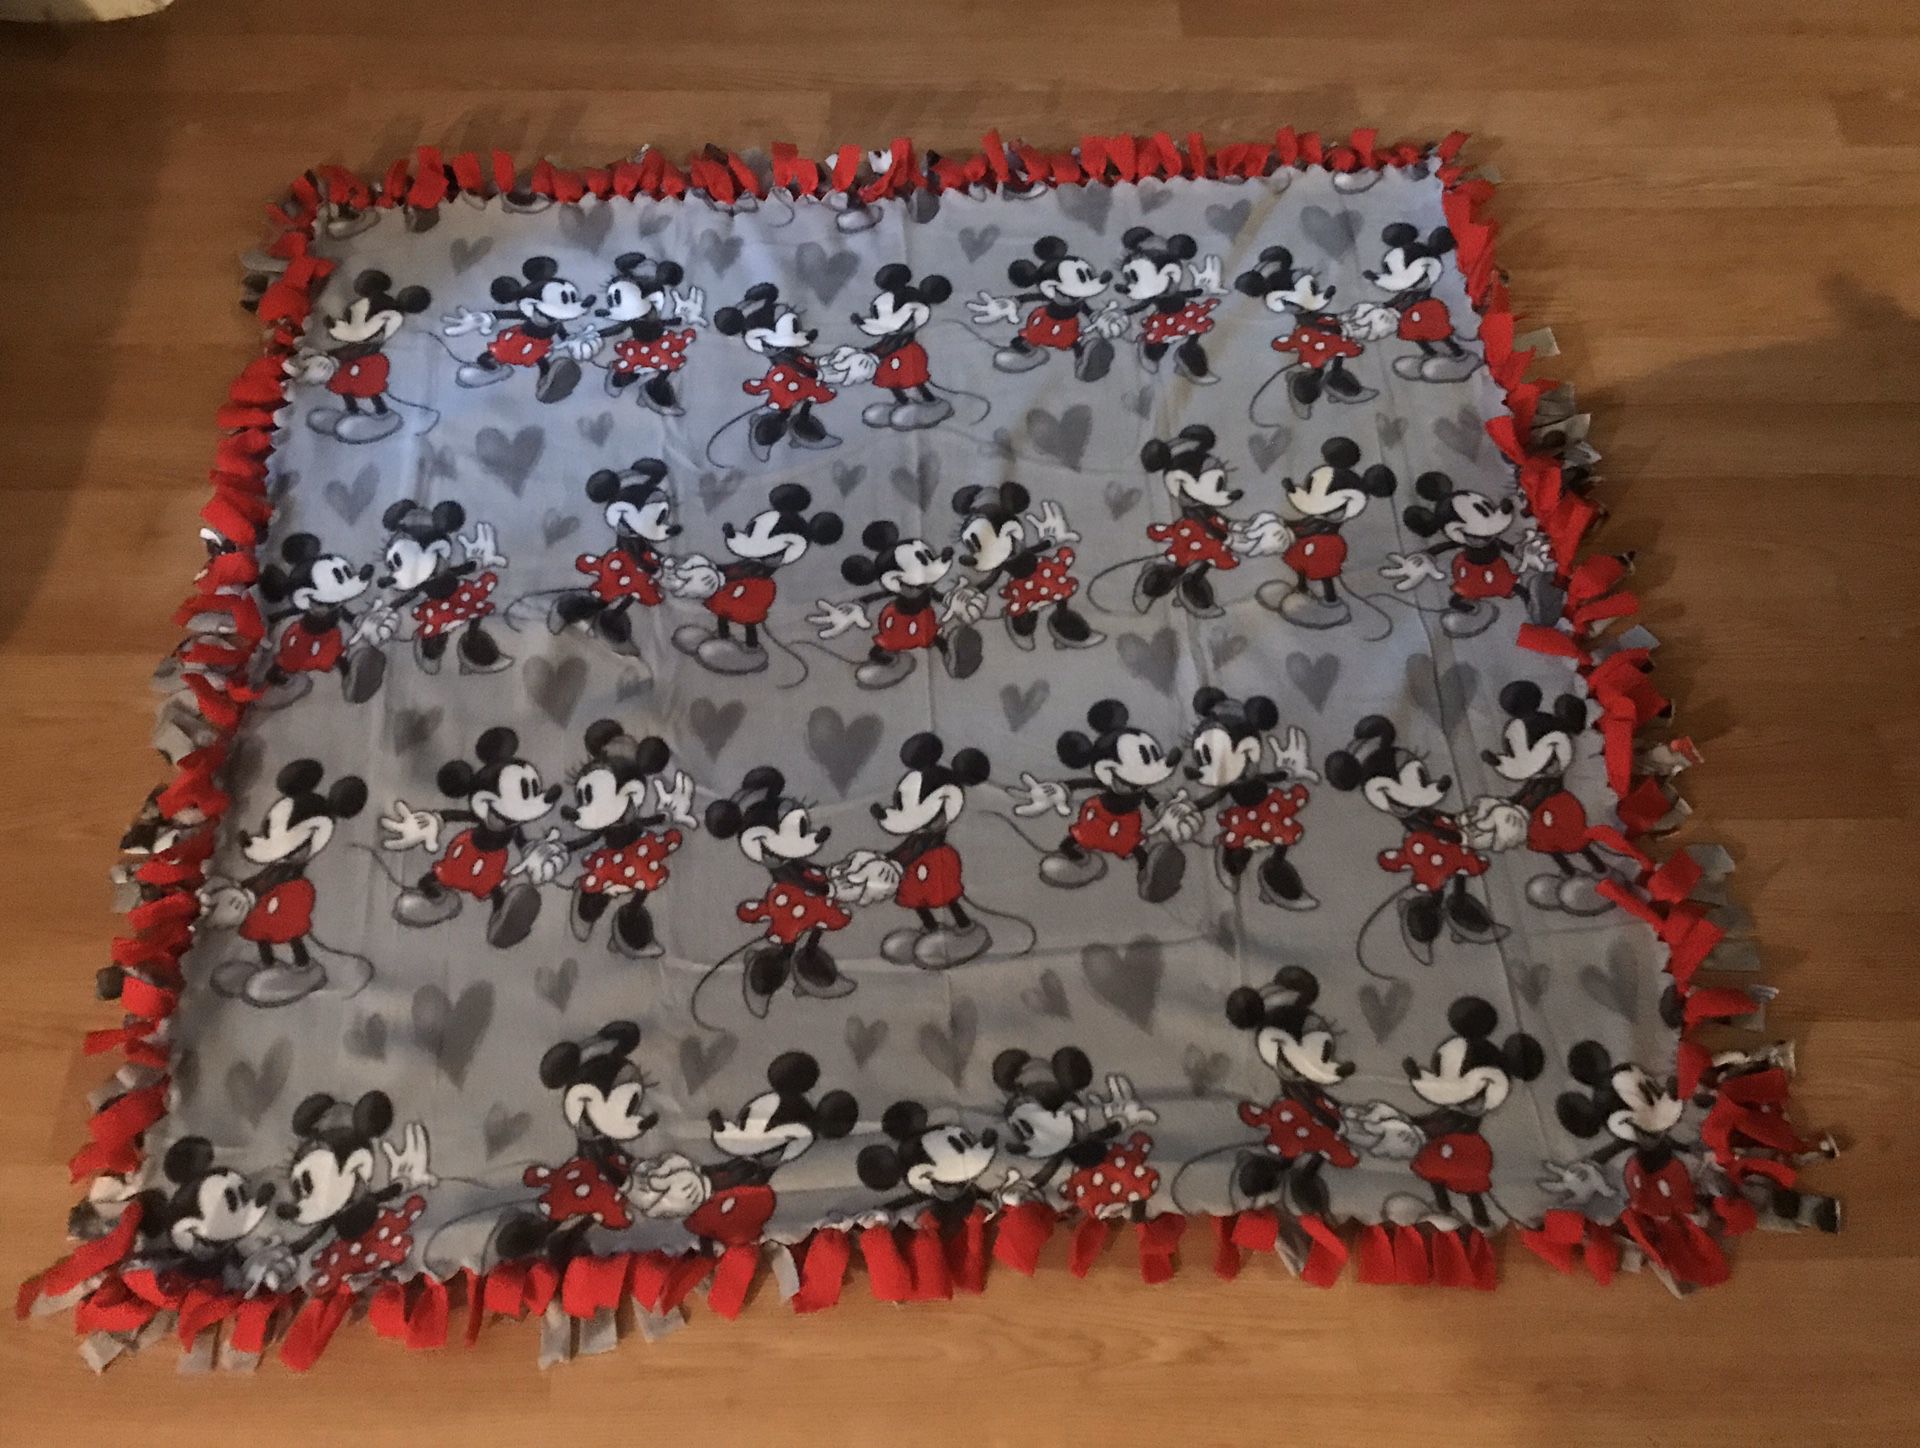 New Mikey & Minnie tie fleece blanket 54”X60”